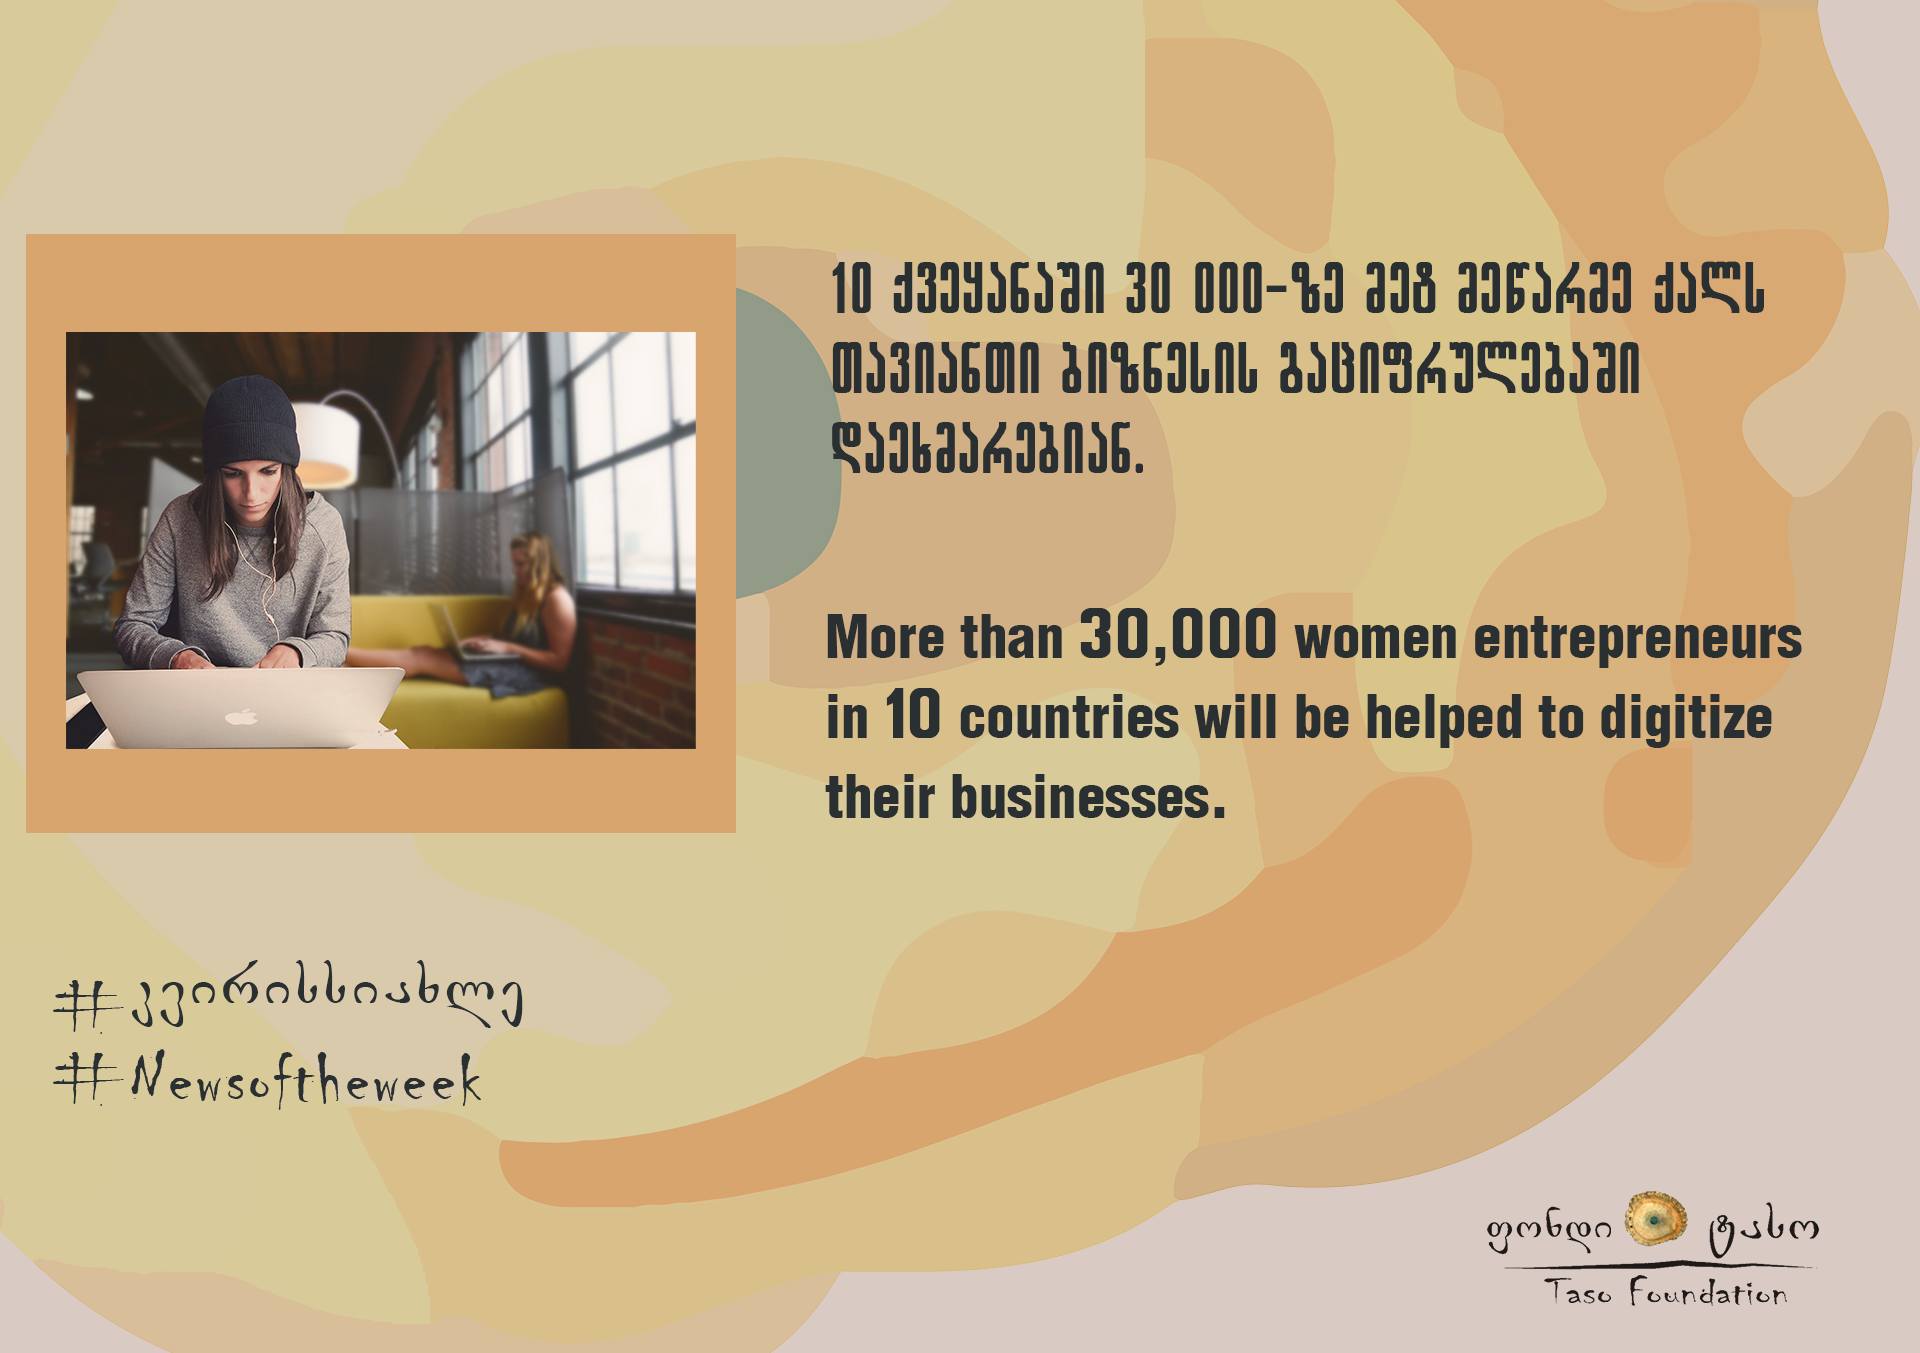 მეწარმე ქალებს ბიზნესის დიგიტალიზაციაში დაეხმარებიან